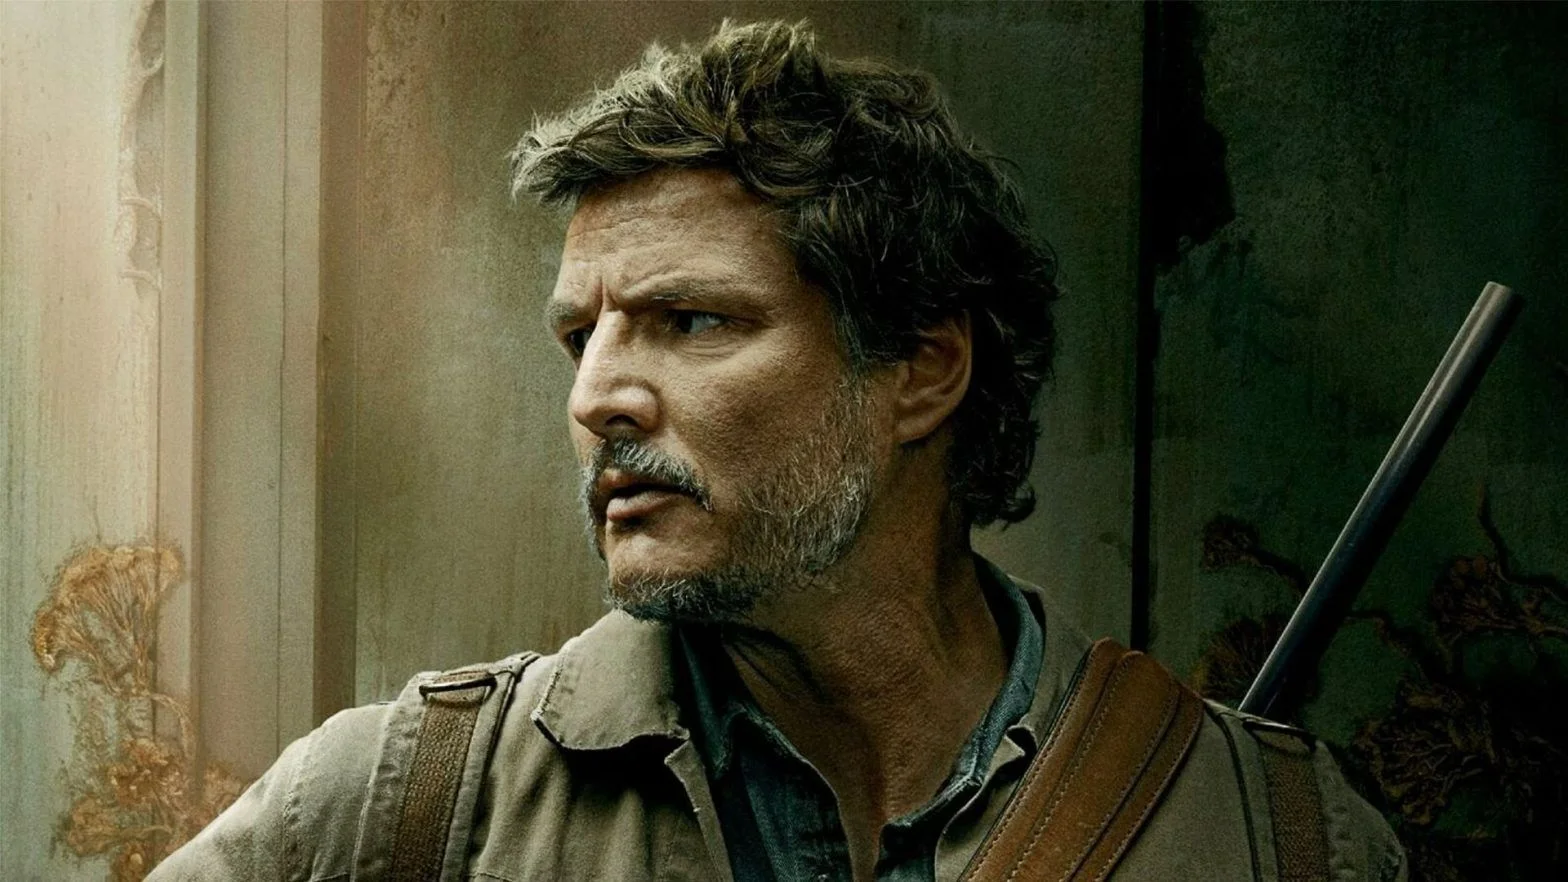 Педро Паскаль намекнул, что во втором сезоне The Last of Us сериал может отойти от сценария игры